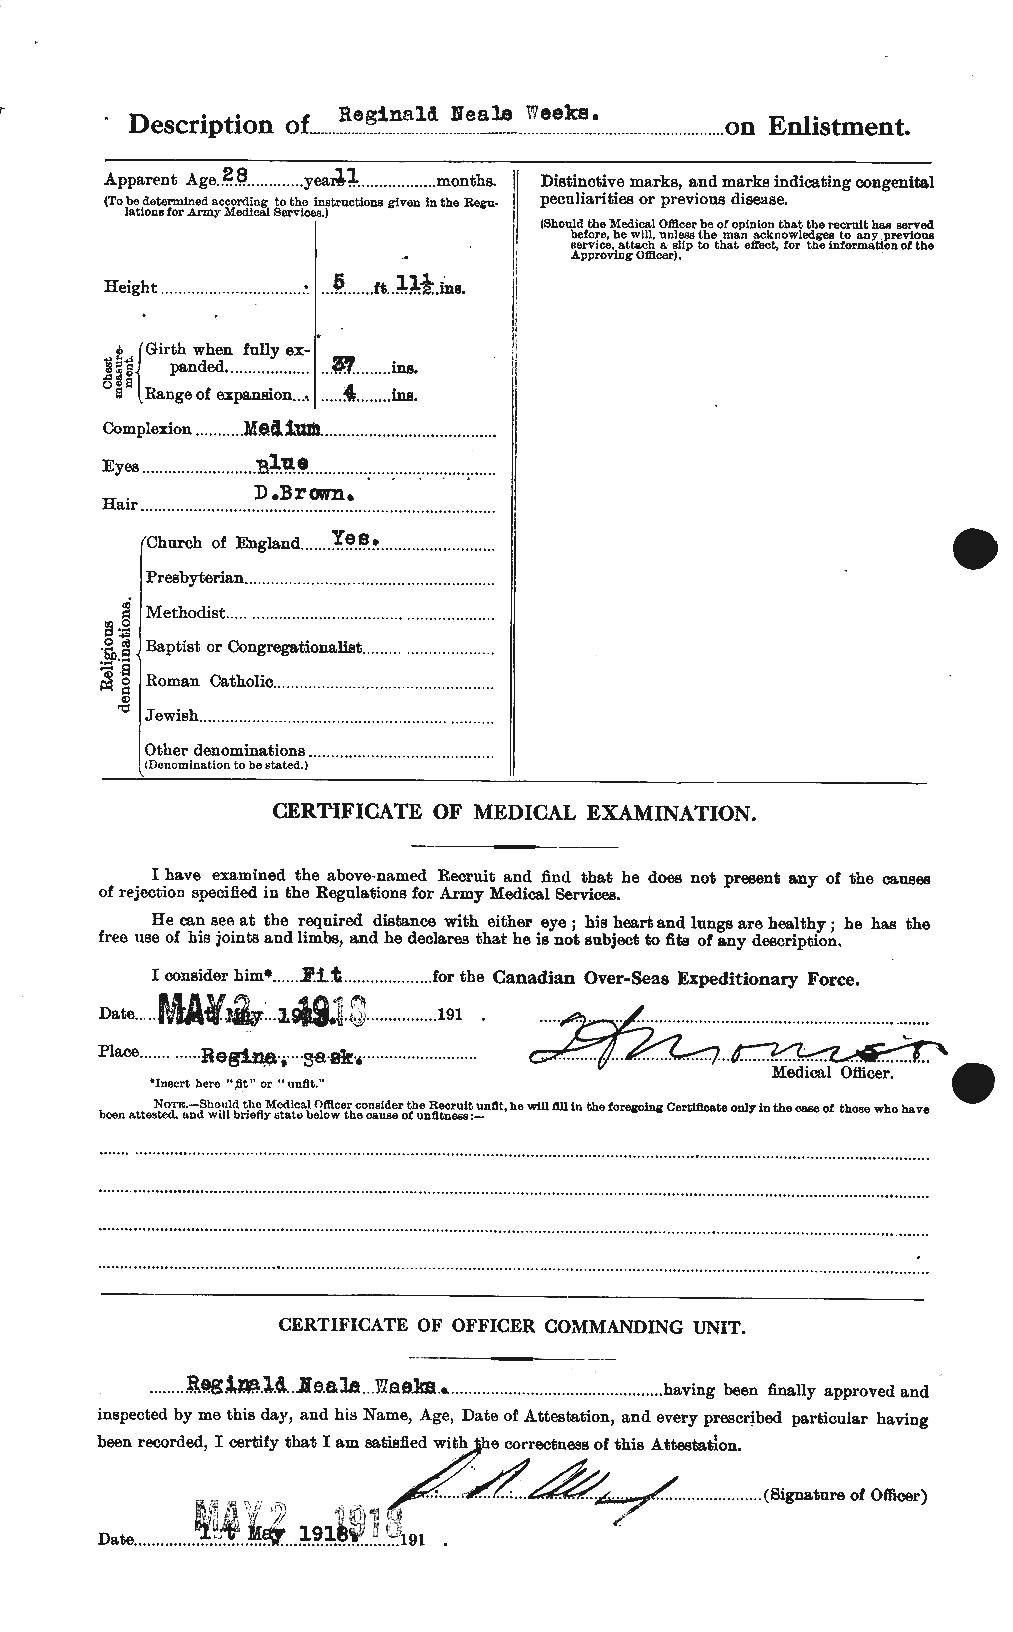 Dossiers du Personnel de la Première Guerre mondiale - CEC 663523b